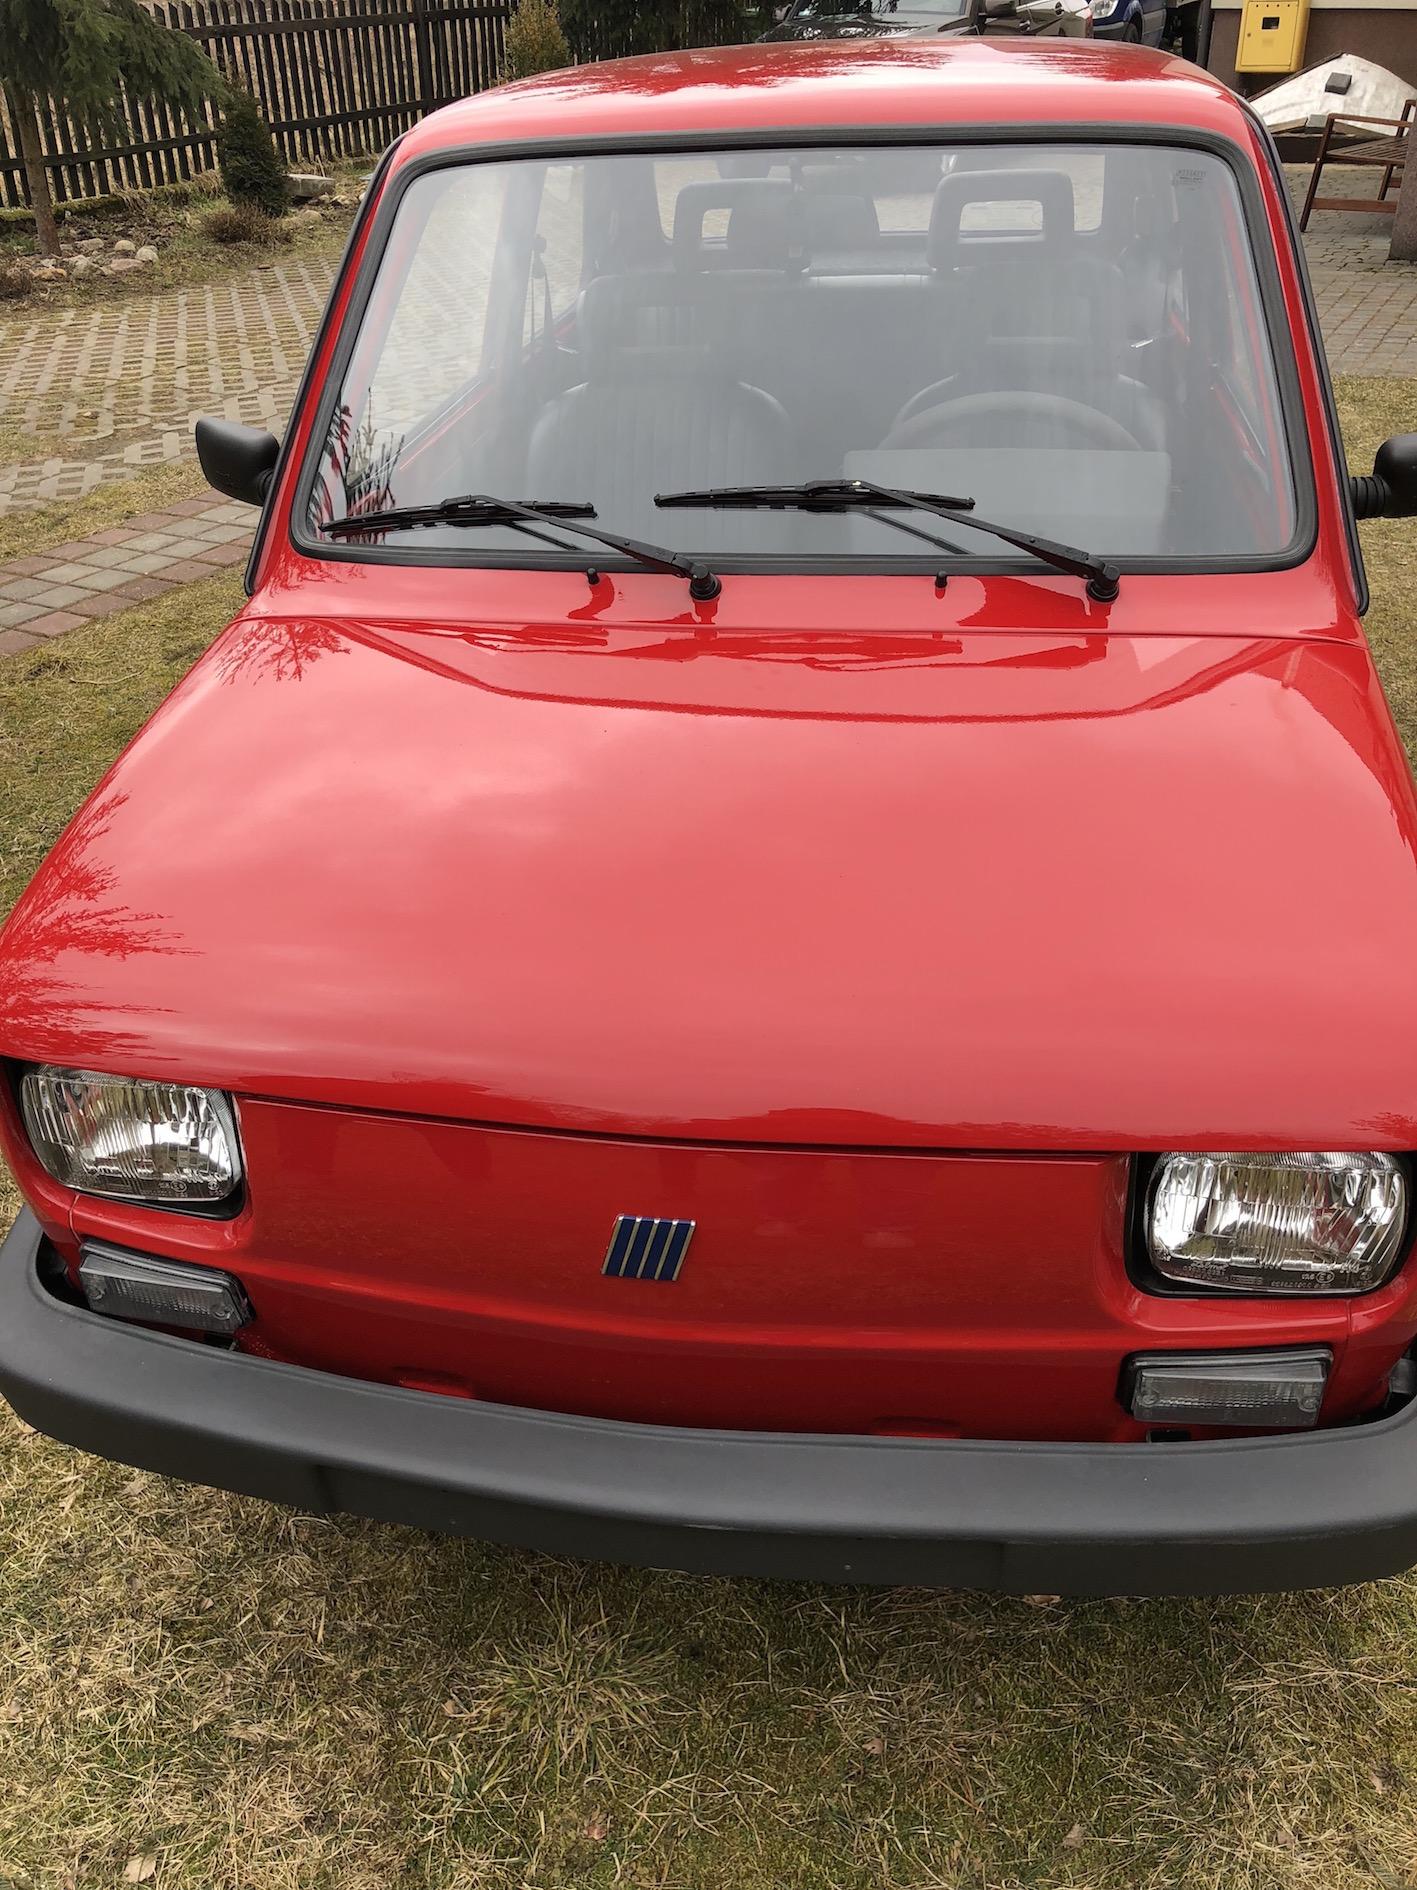 Nowy Fiat 126p nierejestrowany 7266589081 oficjalne